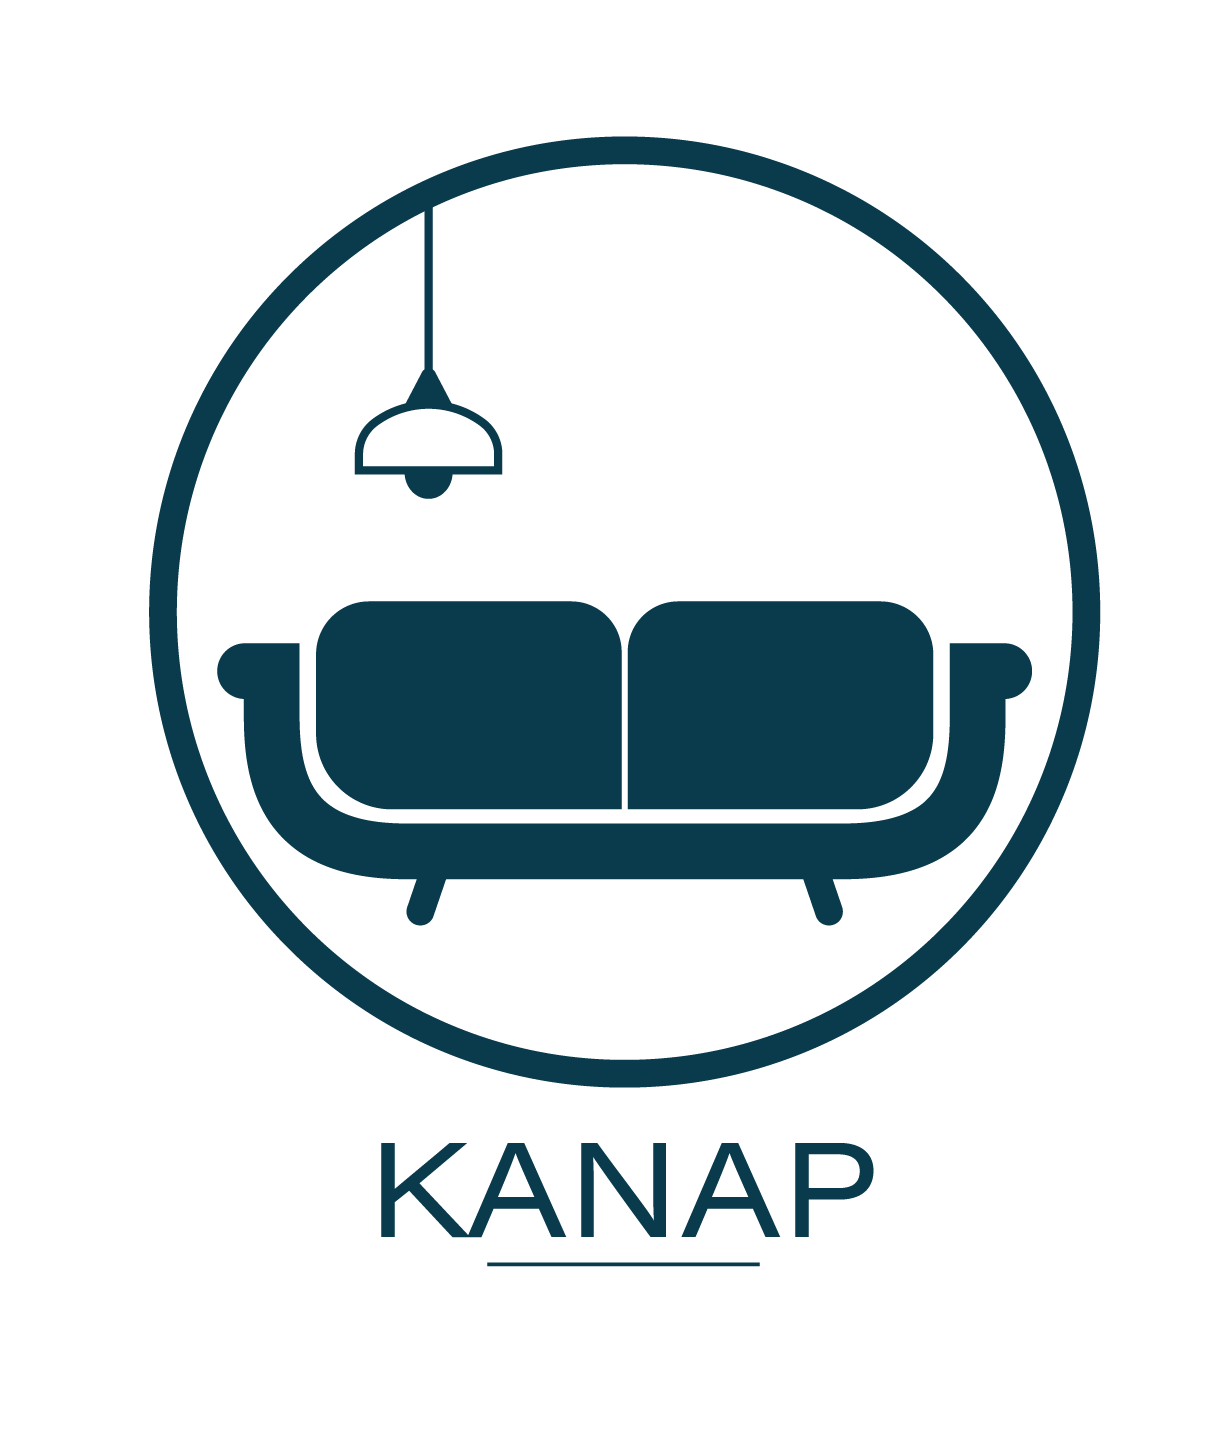 Kanap company logo